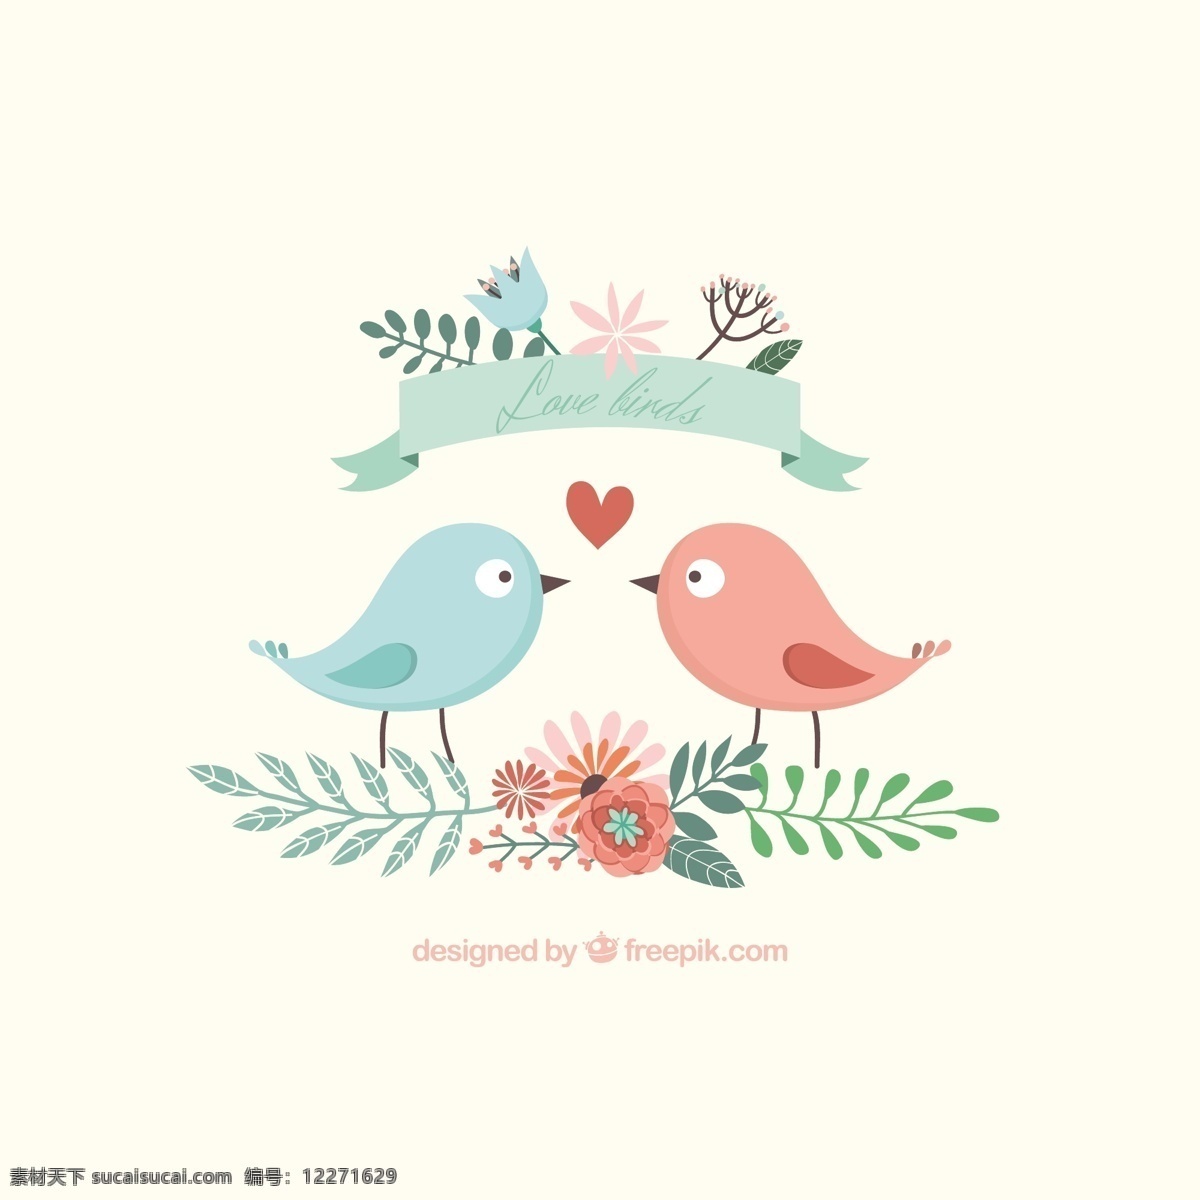 可爱 小鸟 插图 丝带 自然 可爱的 翅膀 树叶 夫妇 植物 浪漫 枝繁叶茂 在一起